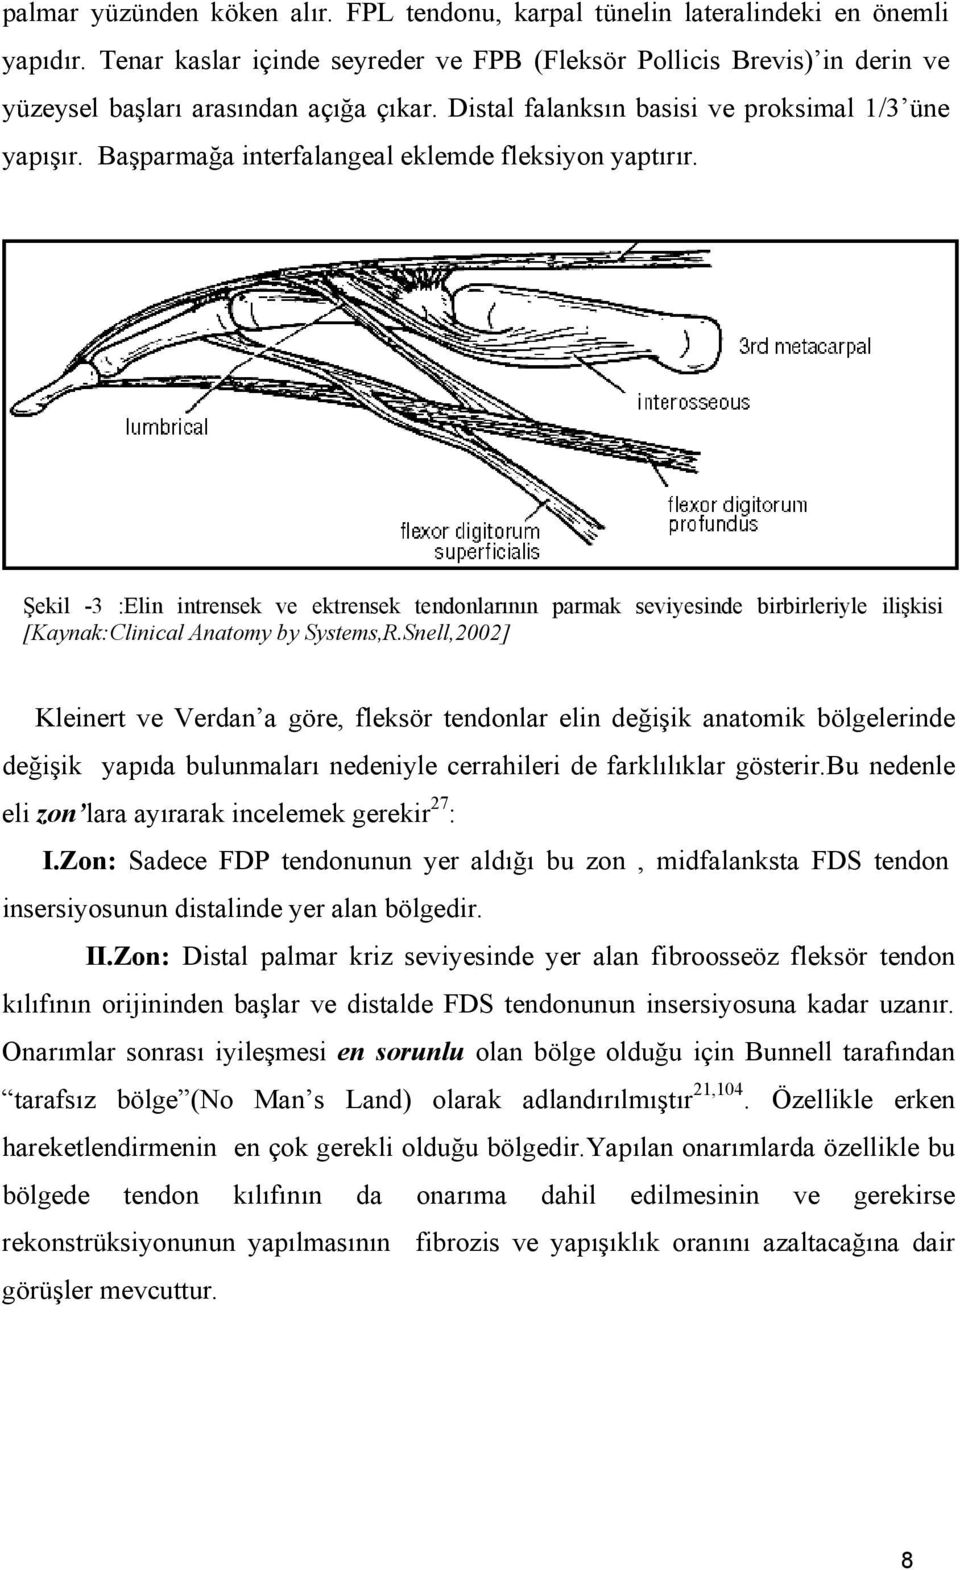 Başparmağa interfalangeal eklemde fleksiyon yaptırır. Şekil -3 :Elin intrensek ve ektrensek tendonlarının parmak seviyesinde birbirleriyle ilişkisi [Kaynak:Clinical Anatomy by Systems,R.